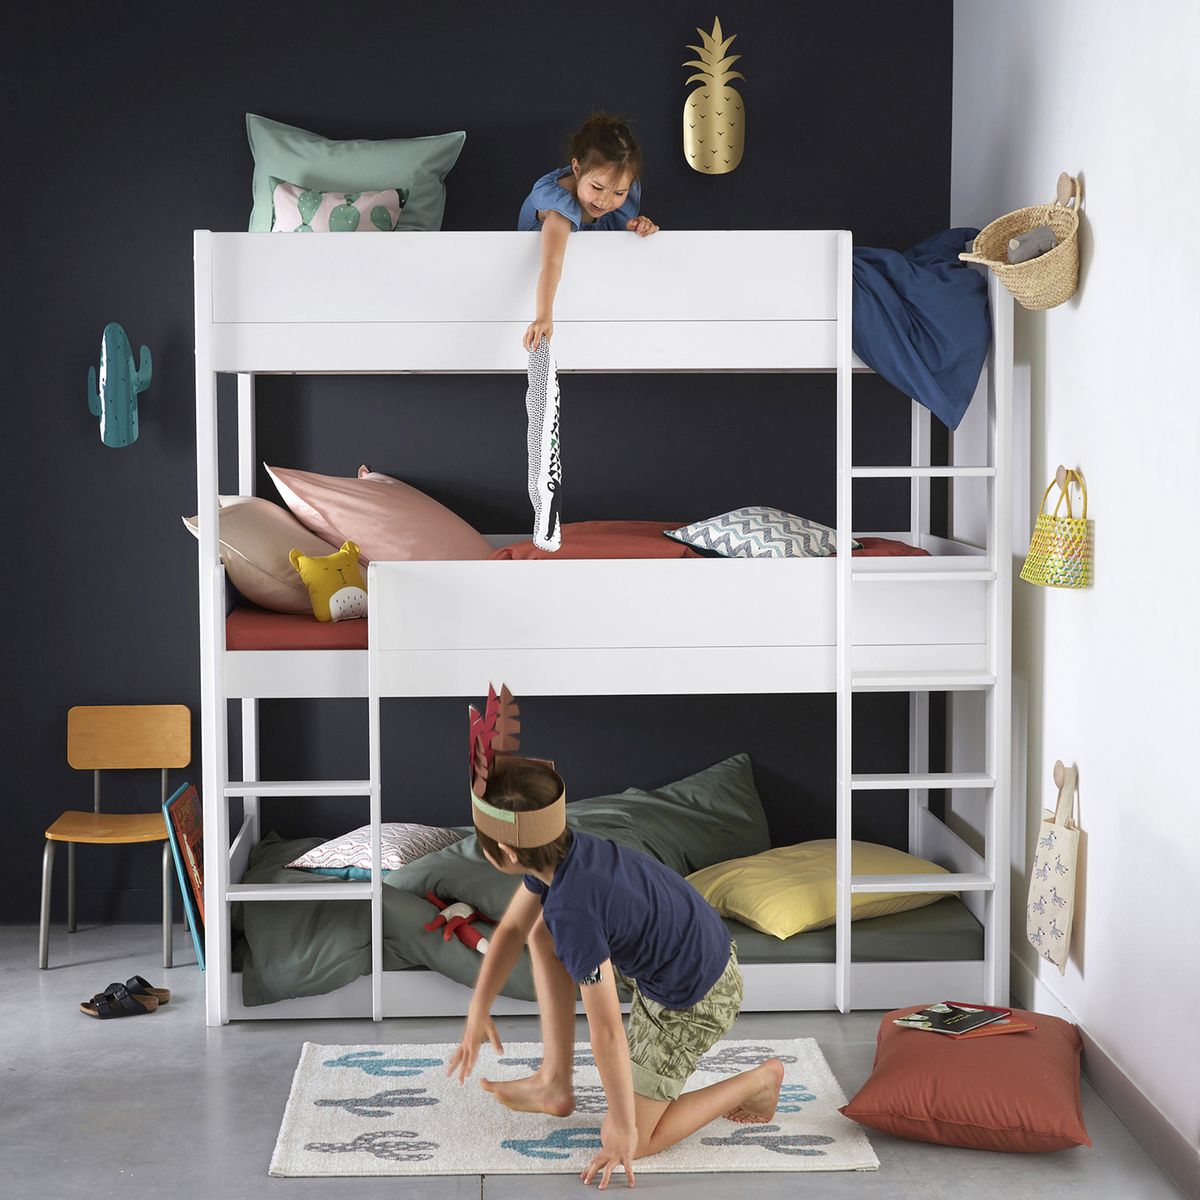 Métal lit simple superposé 2 personnes chambre à deux lits enfants de cadre de lit meubles,Silver